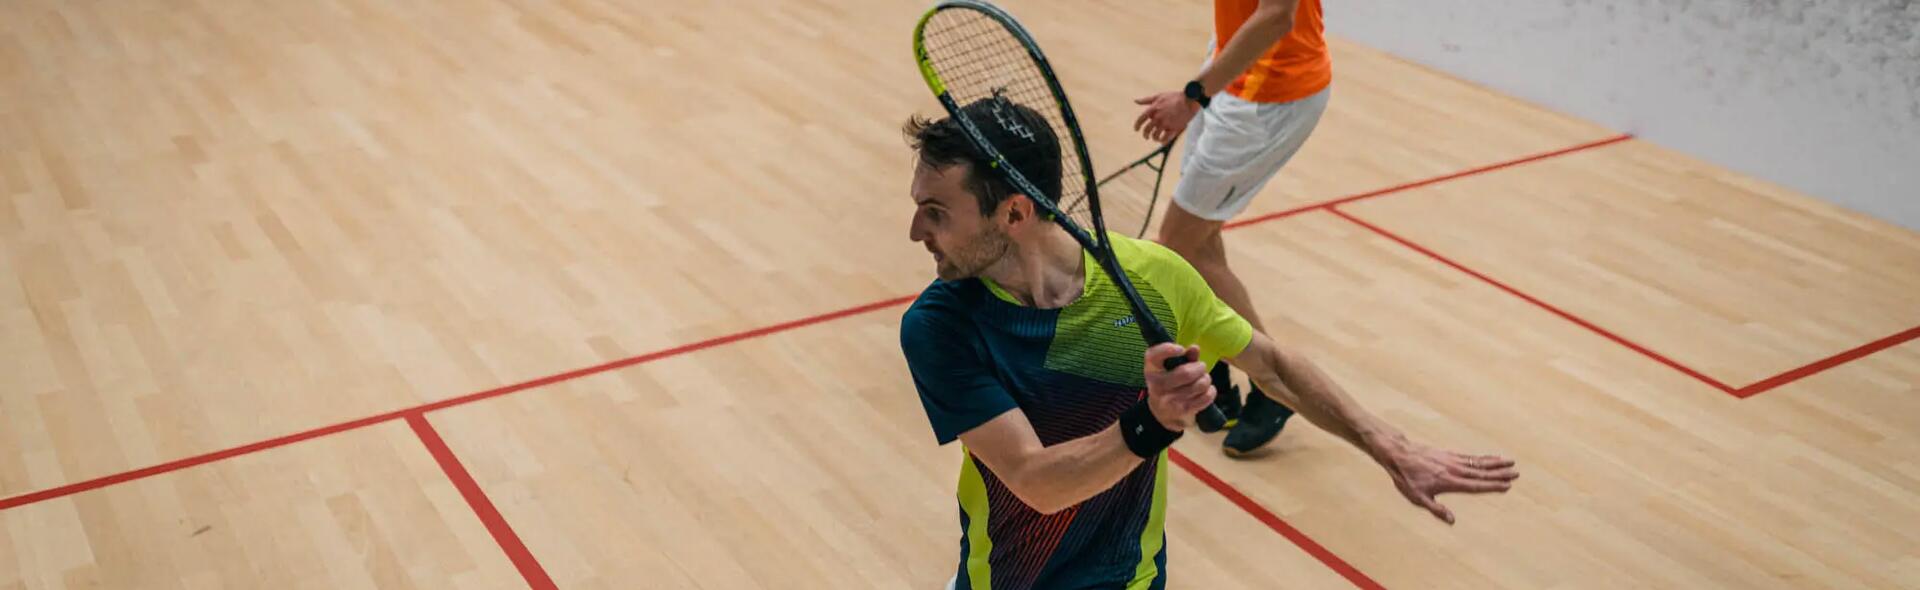 mężczyzna grający w squasha